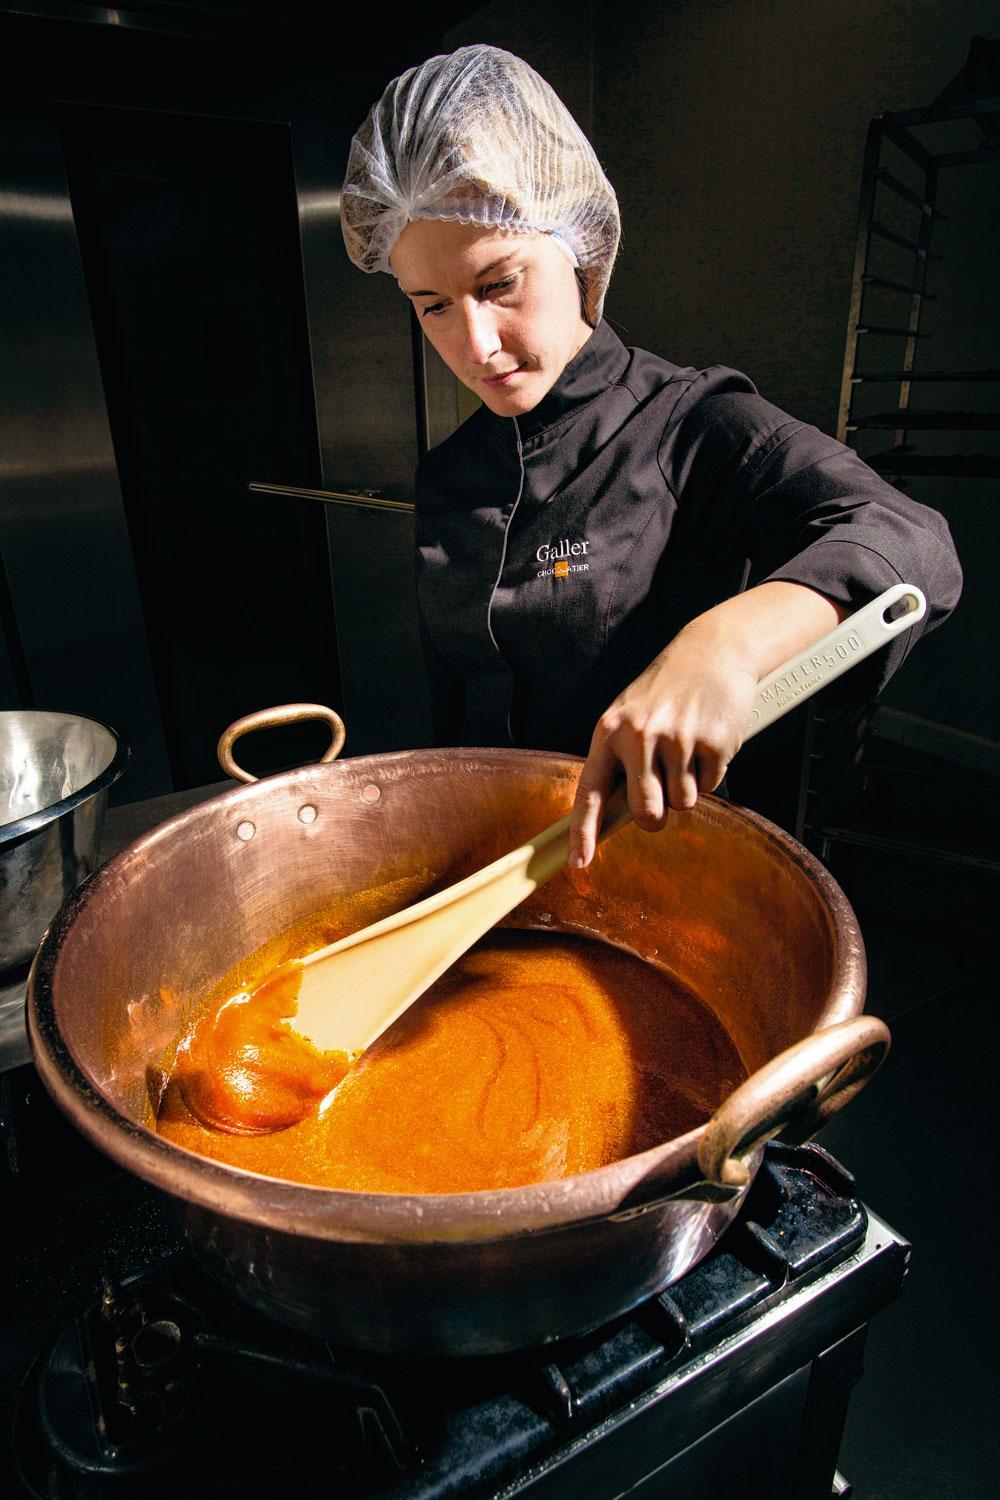 De vulling bereiden - Voor de bereiding van de nieuwe praline met karamel en pecannotenwordt eerst karamel gemaakt door de suiker te verhitten in een grote koperen ketel en die geregeld behoedzaam om te roeren. 